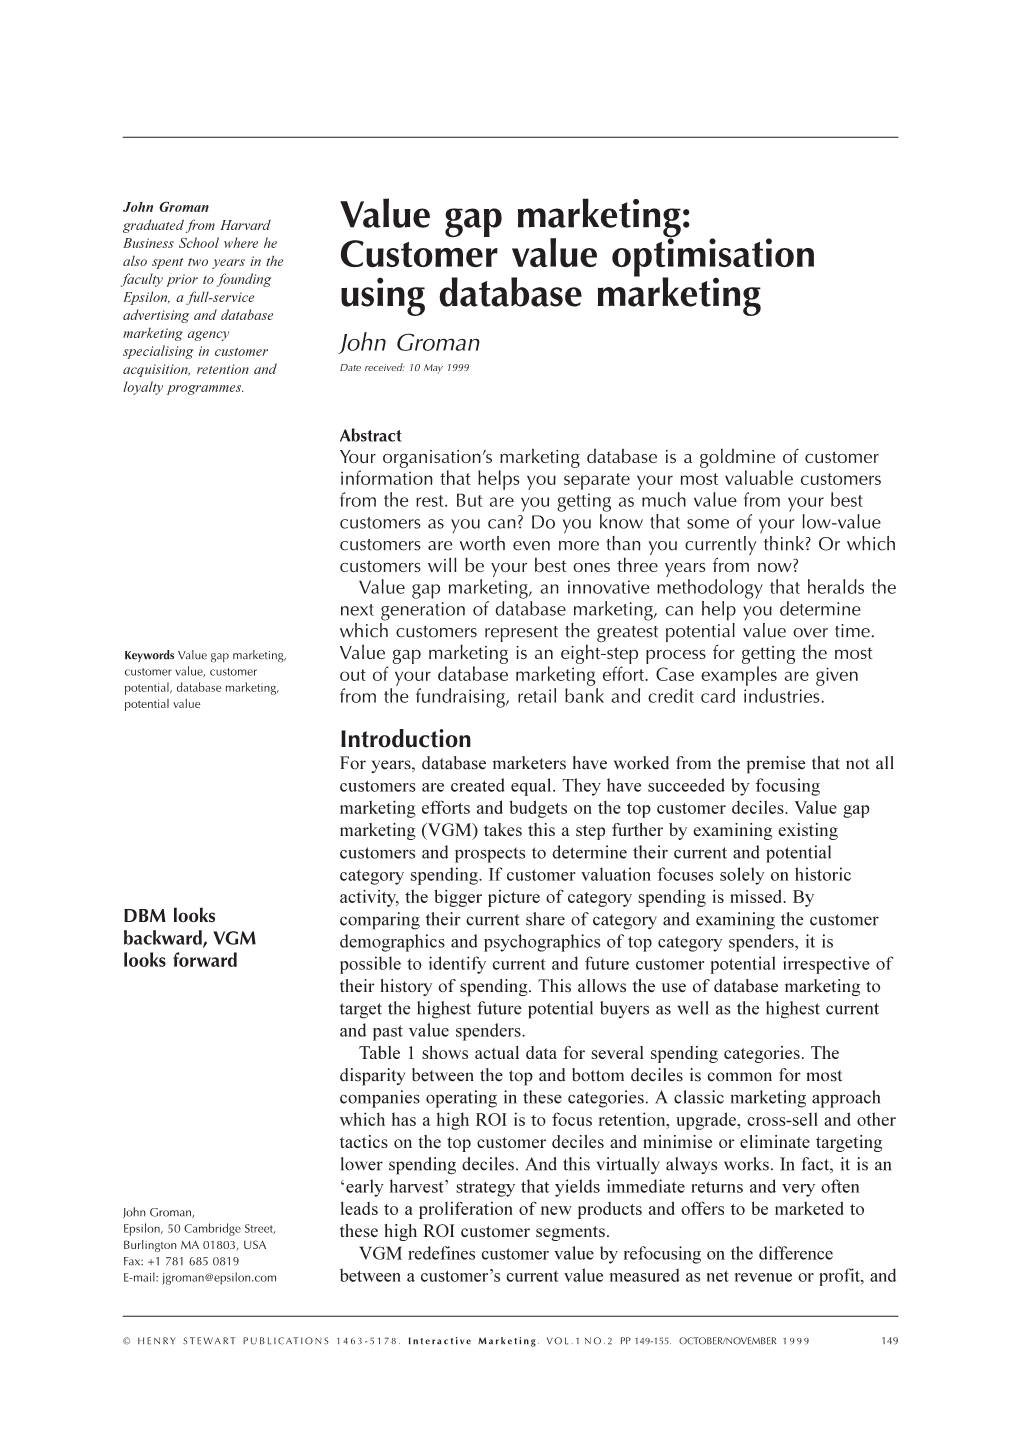 Value Gap Marketing: Customer Value Optimisation Using Database